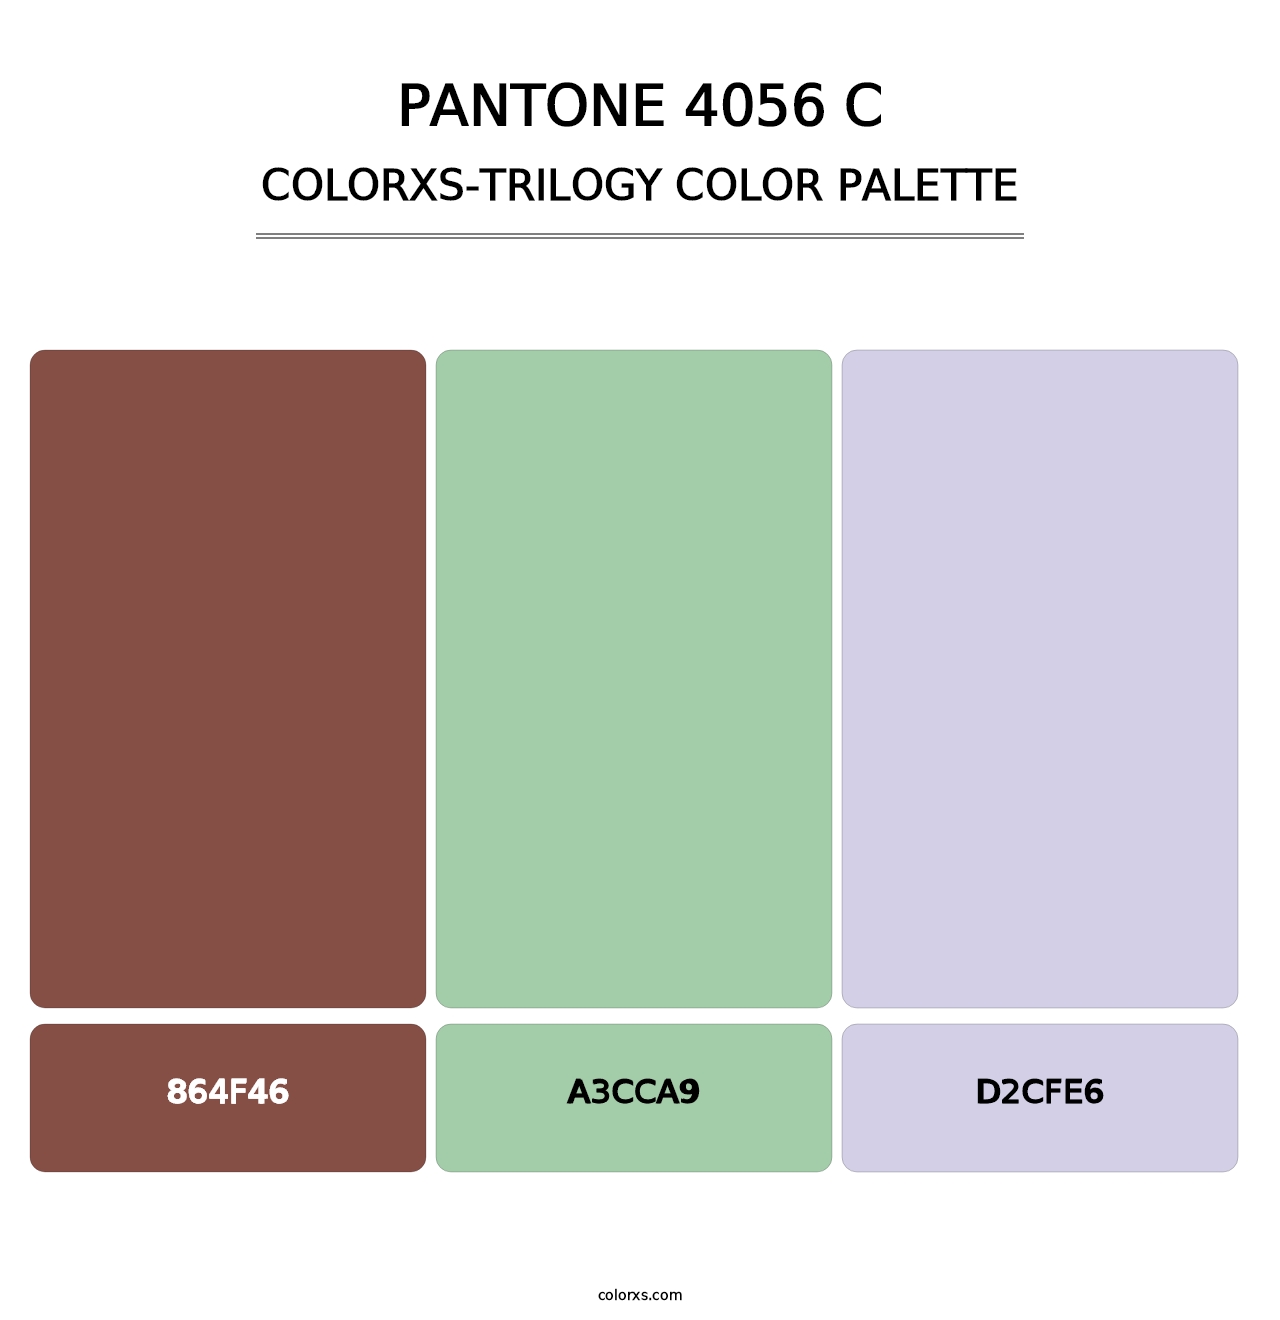 PANTONE 4056 C - Colorxs Trilogy Palette